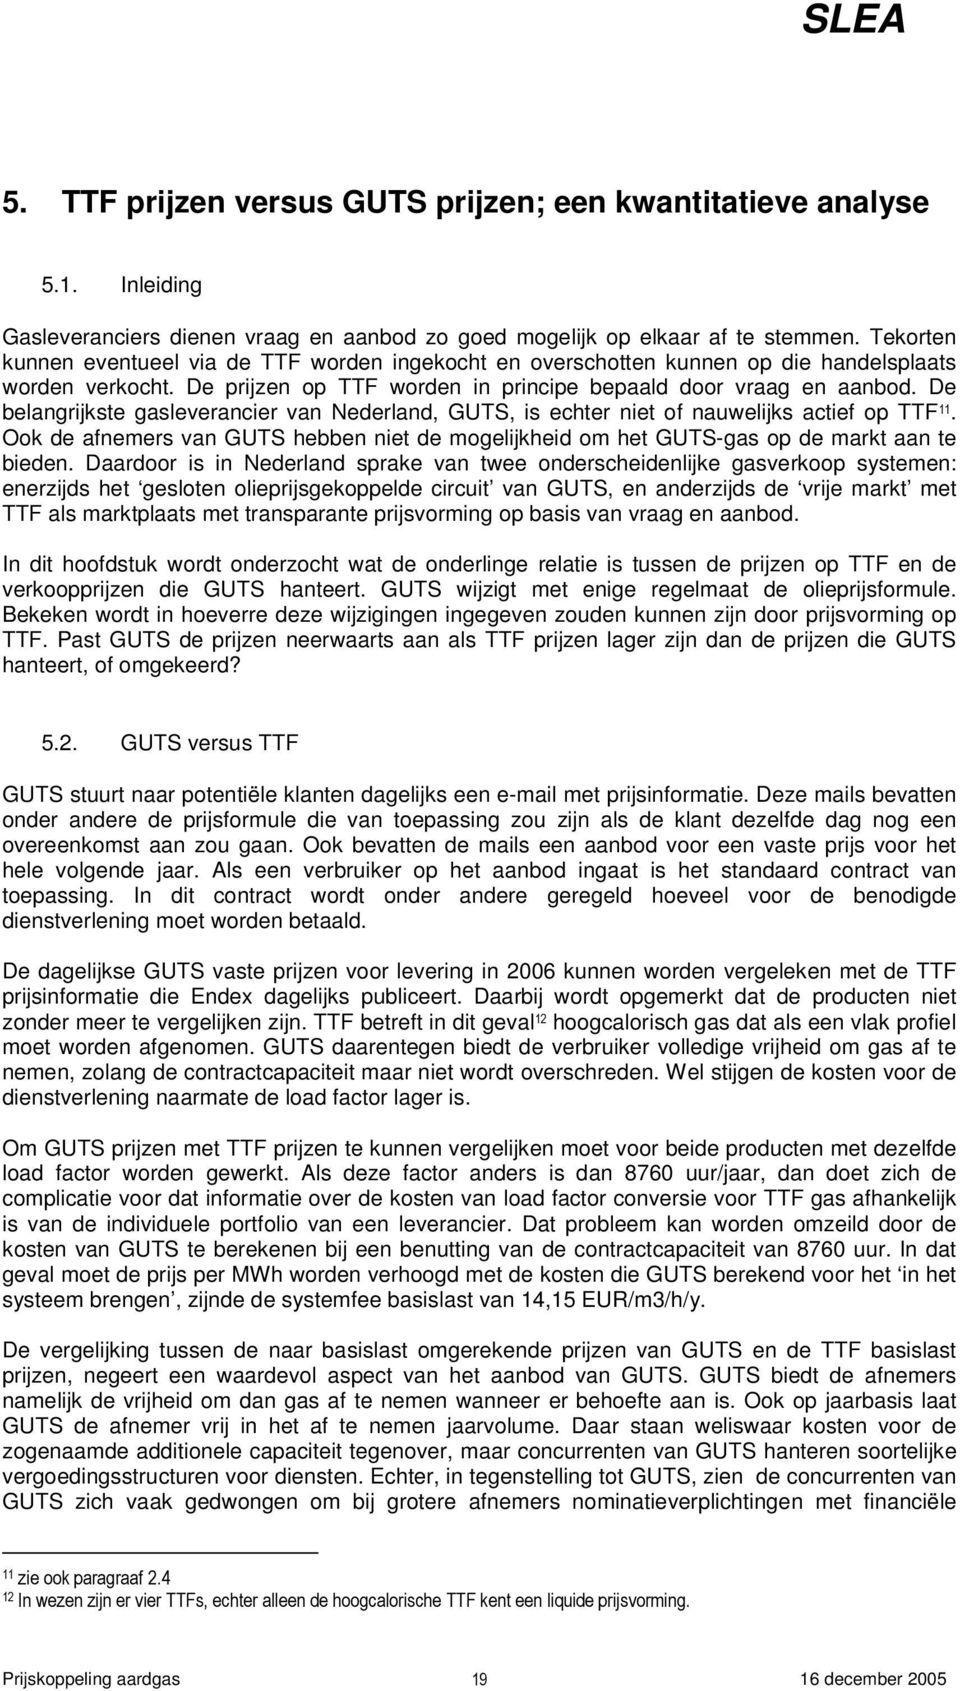 De belangrijkste gasleverancier van Nederland, GUTS, is echter niet of nauwelijks actief op TTF 11. Ook de afnemers van GUTS hebben niet de mogelijkheid om het GUTS-gas op de markt aan te bieden.